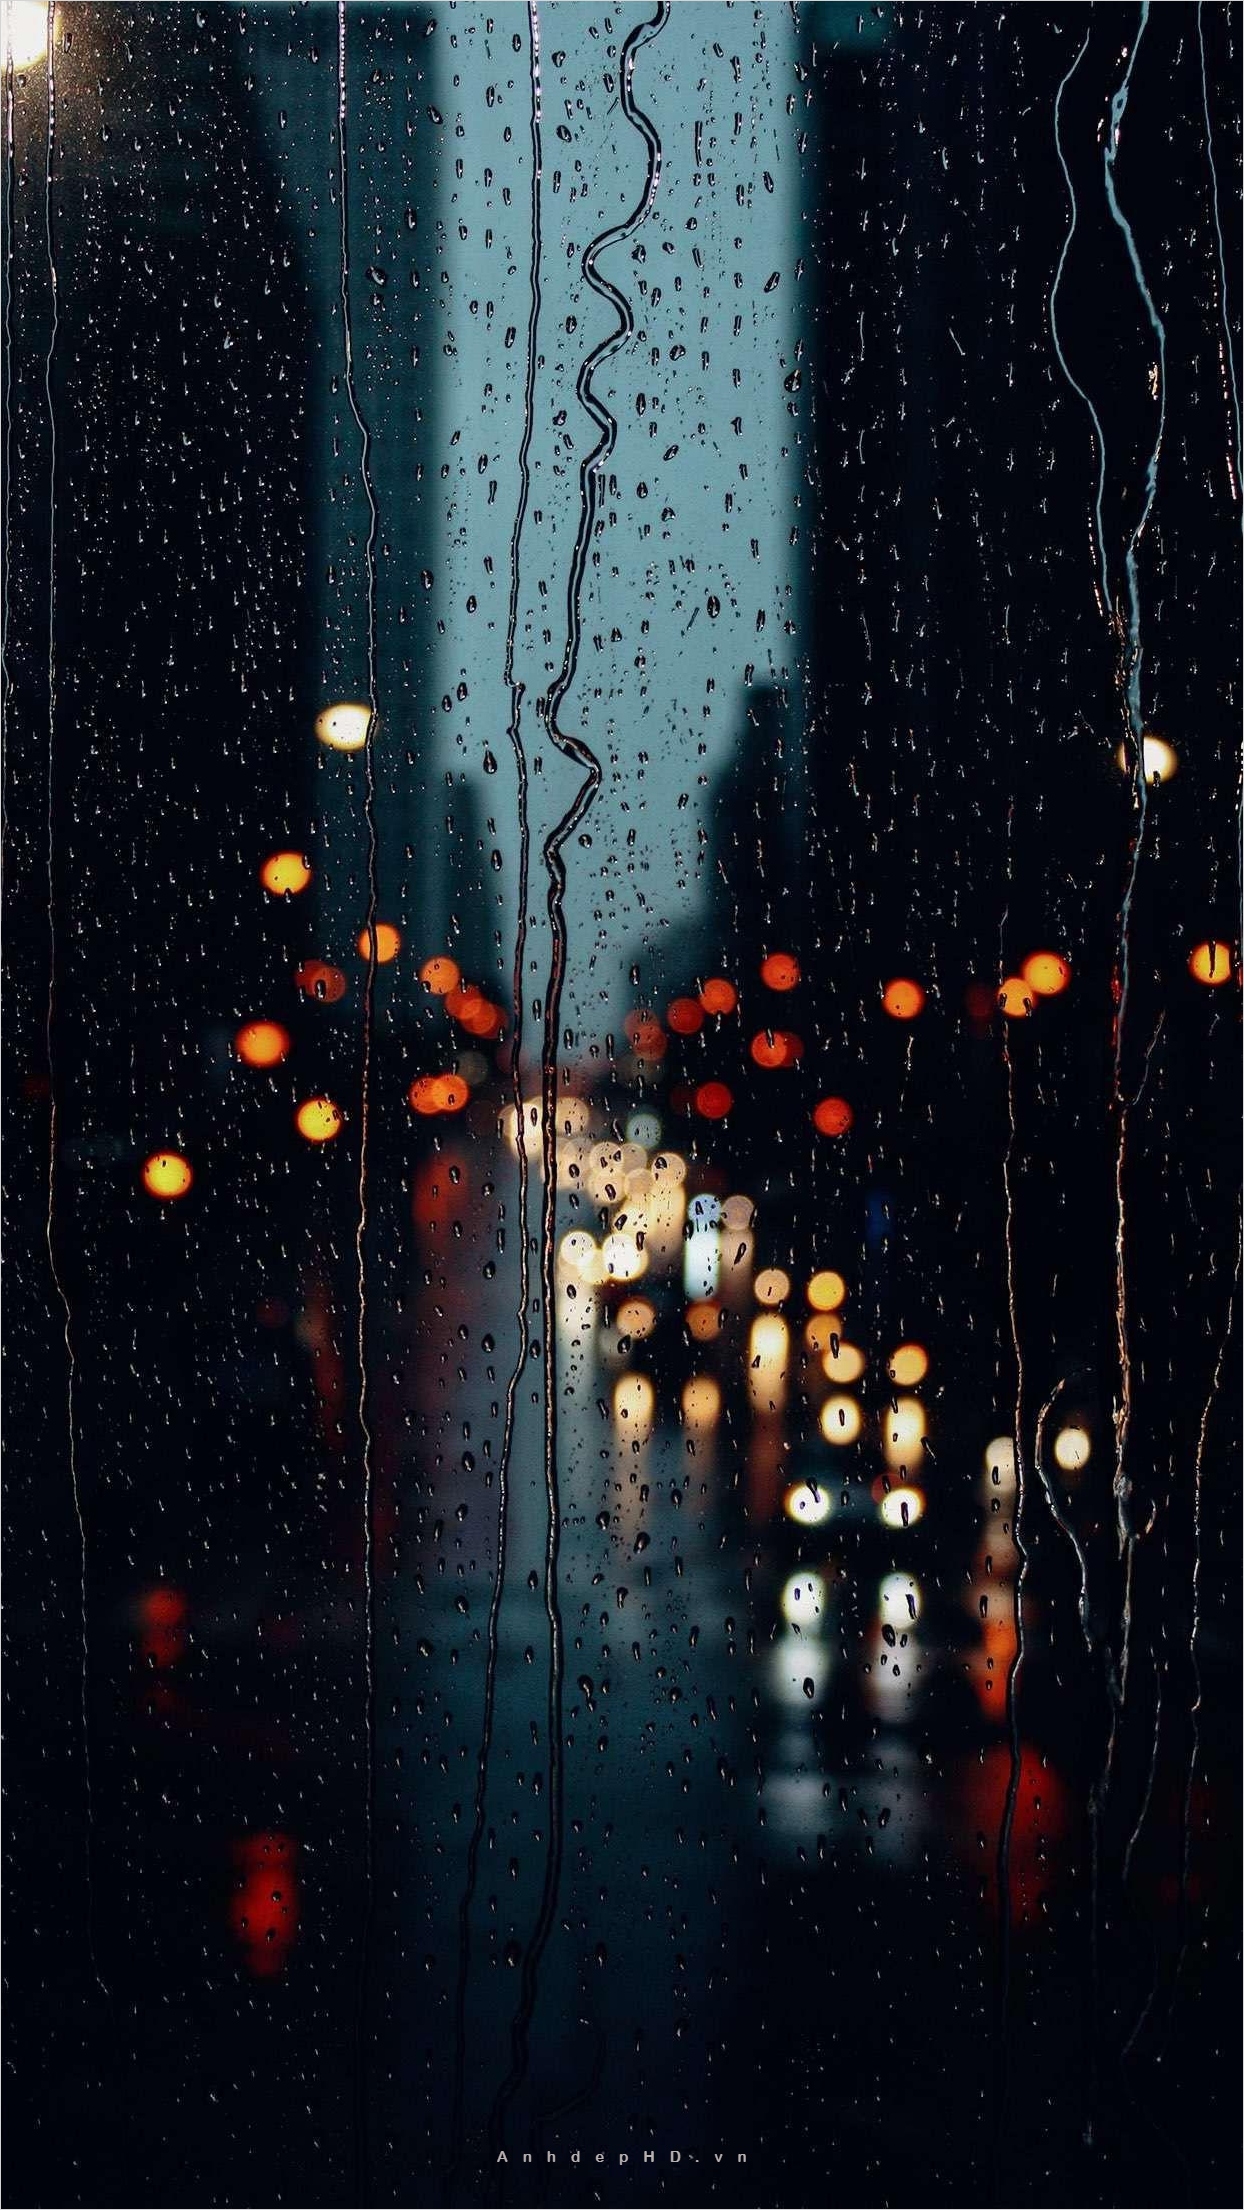 Hãy ghé thăm ảnh buồn tâm trạng trời mưa để cảm nhận sự ảm đạm và lặng lẽ cuồng nhiệt của phong cách hình ảnh này. Cảm giác cô đơn và nhưng lại ấm áp sẽ đắm chìm bạn trong không khí mưa như thật.